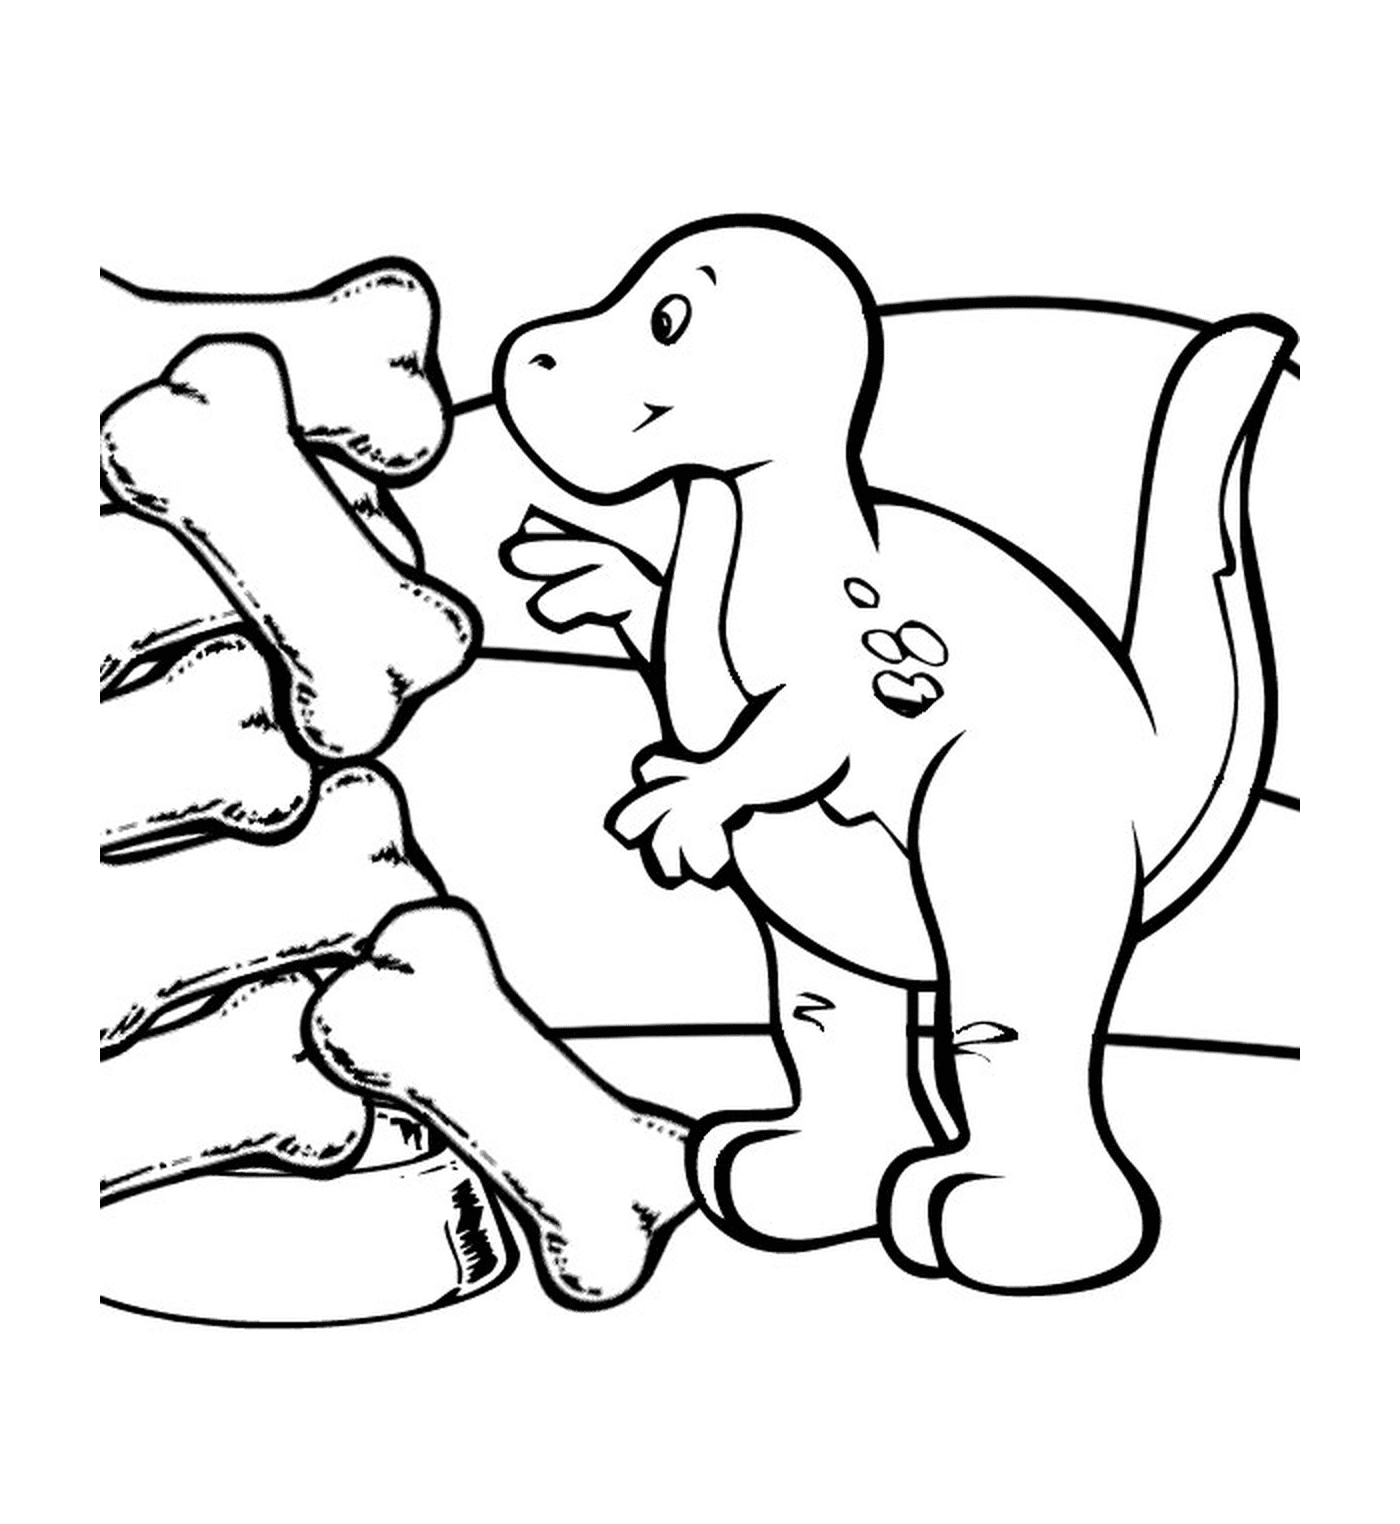  Dinosaurier neben versteinerten Knochen 